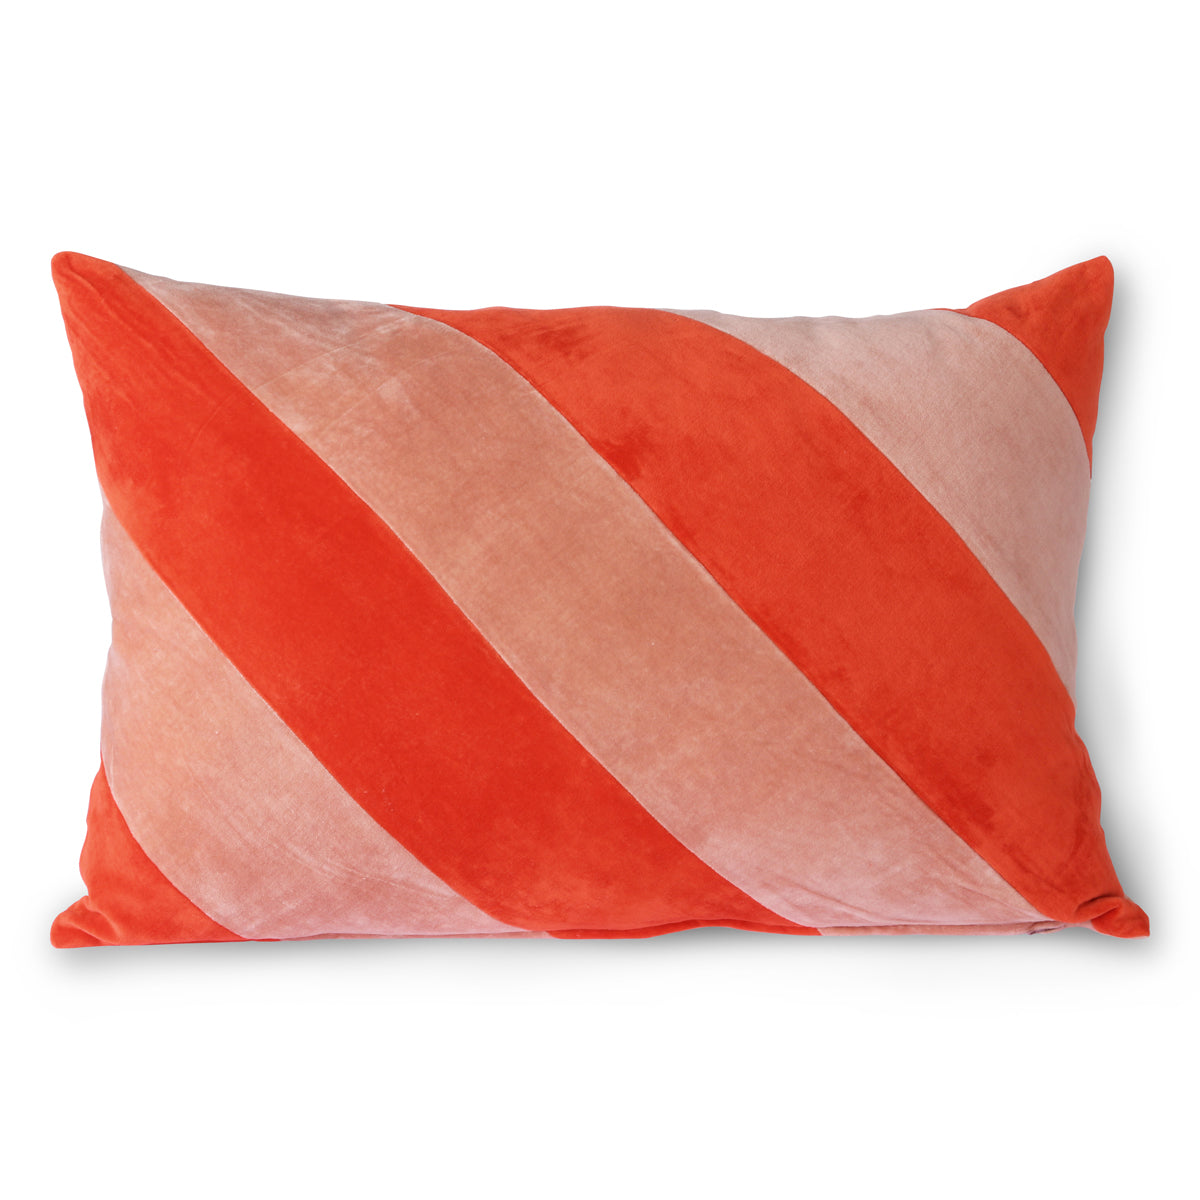 HK living striped velvet cushion red/pink (40x60)